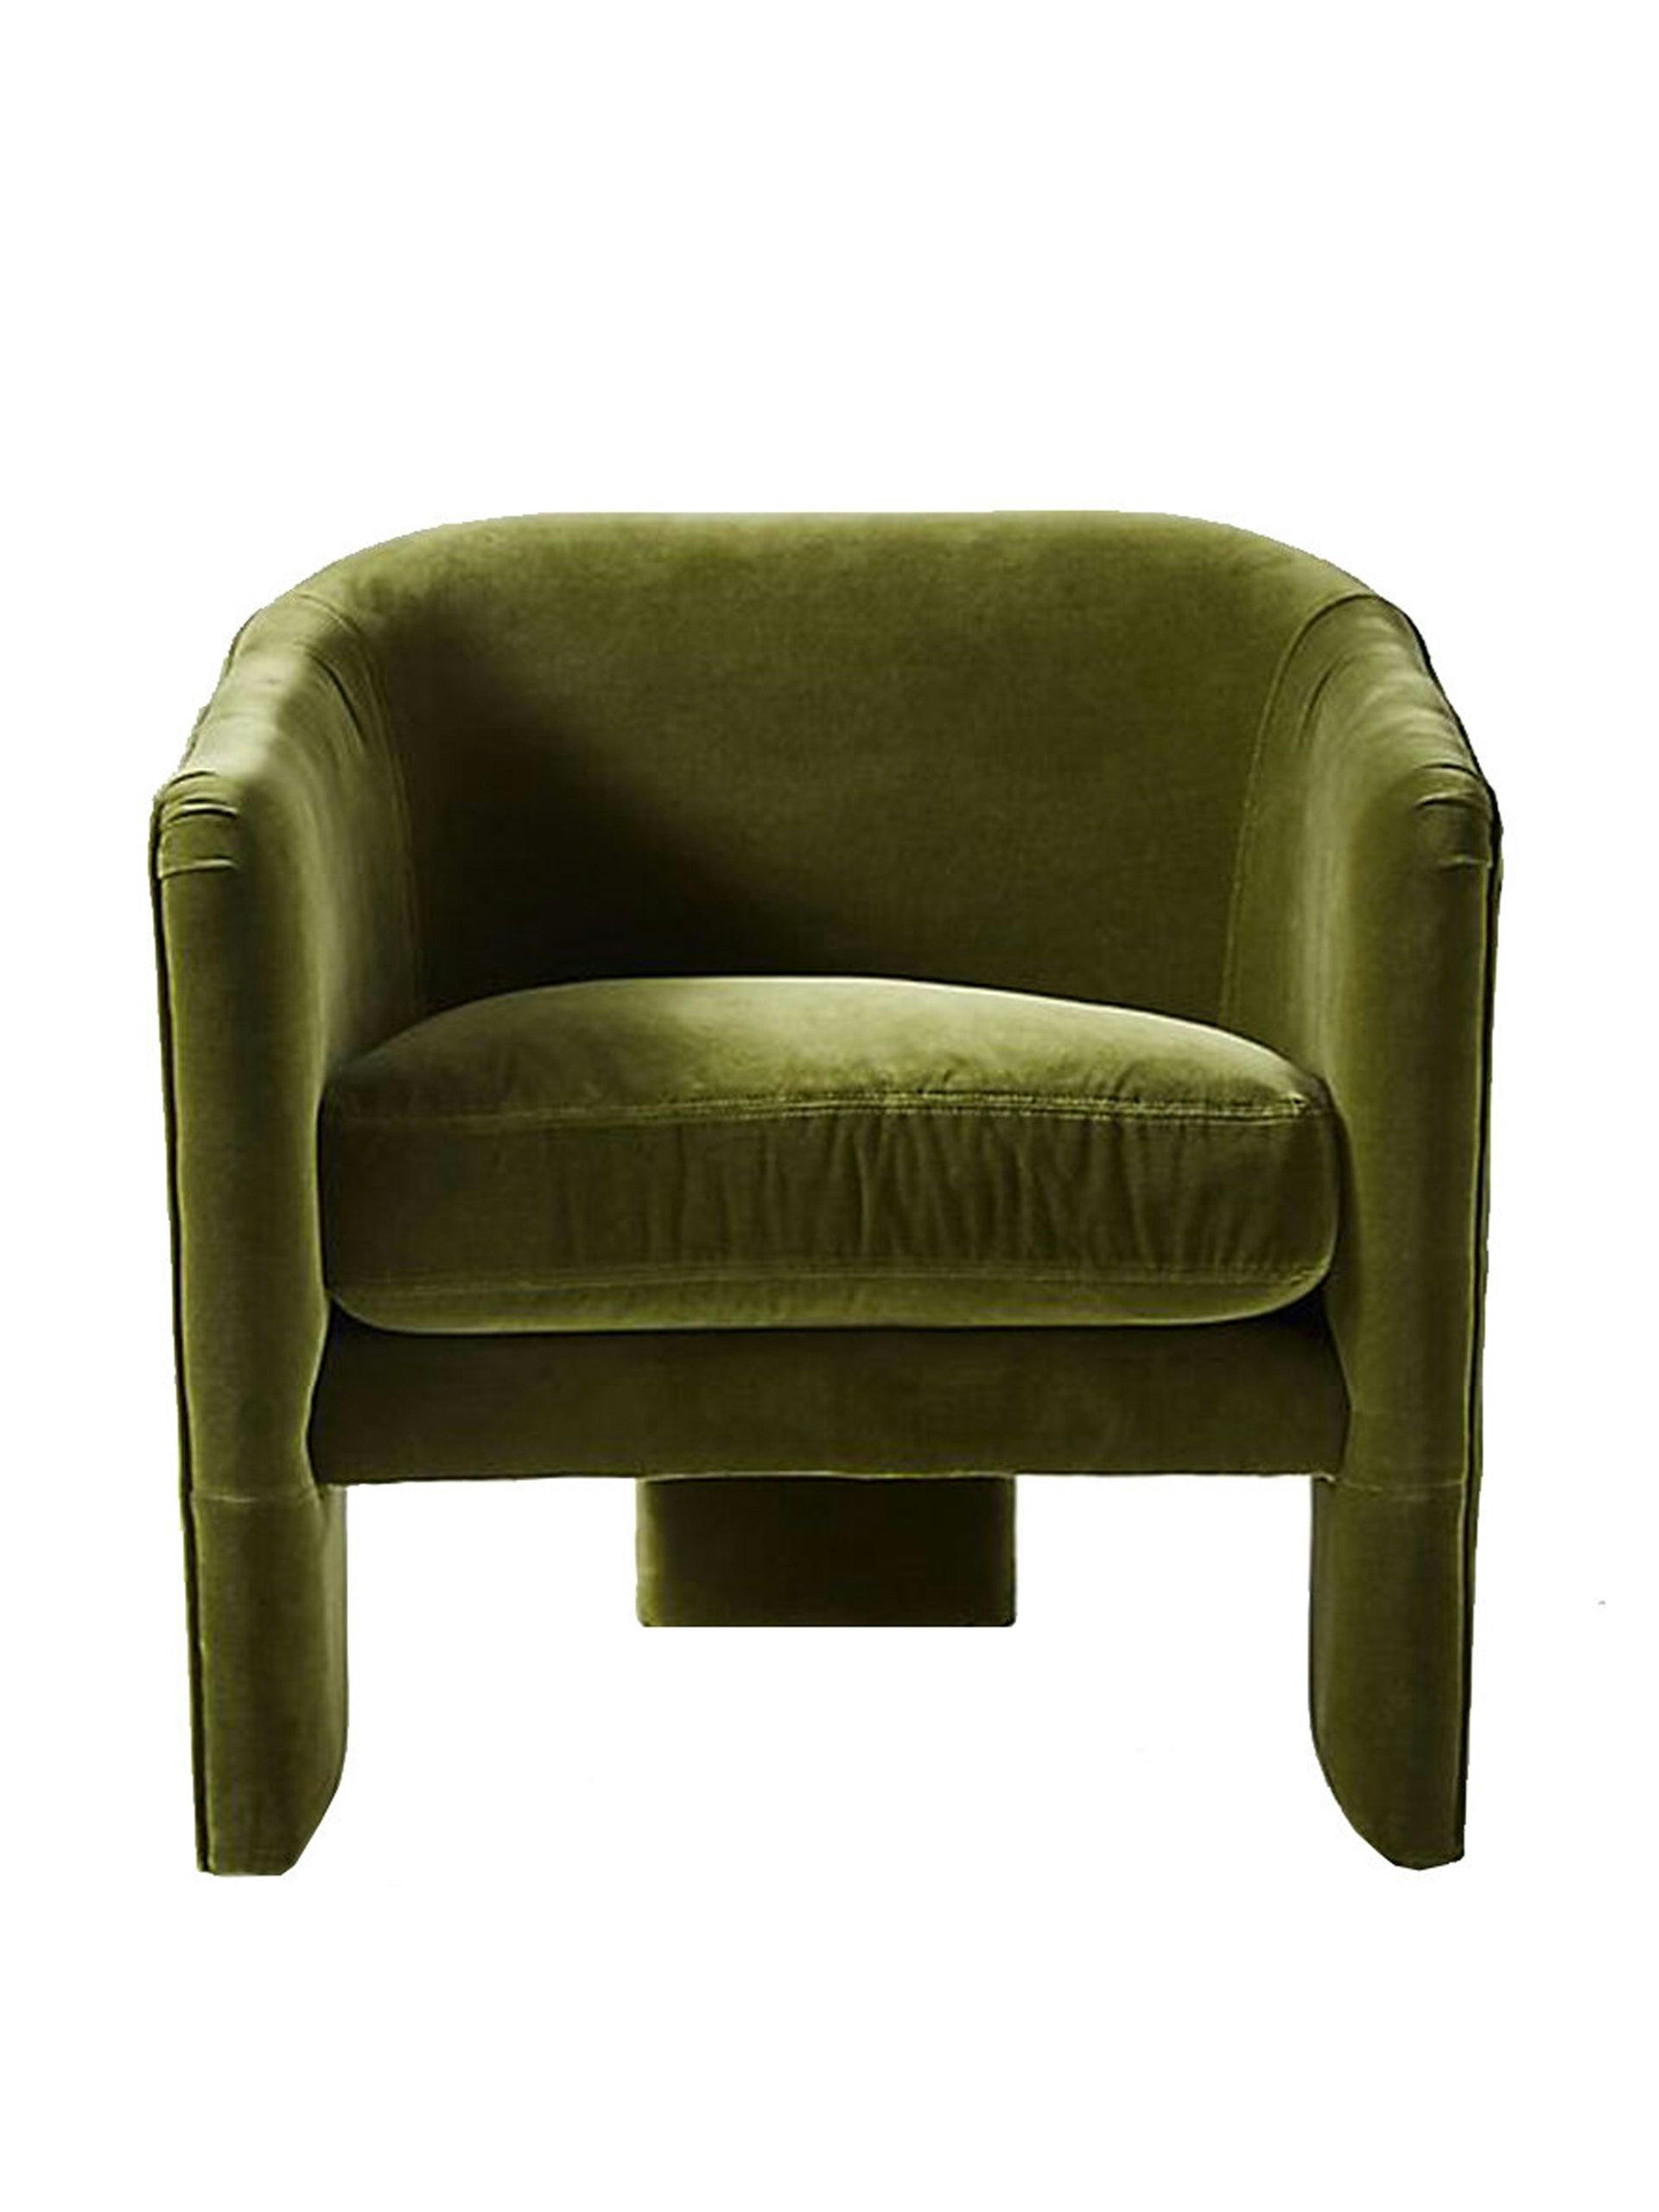 Velvet green tripod armchair